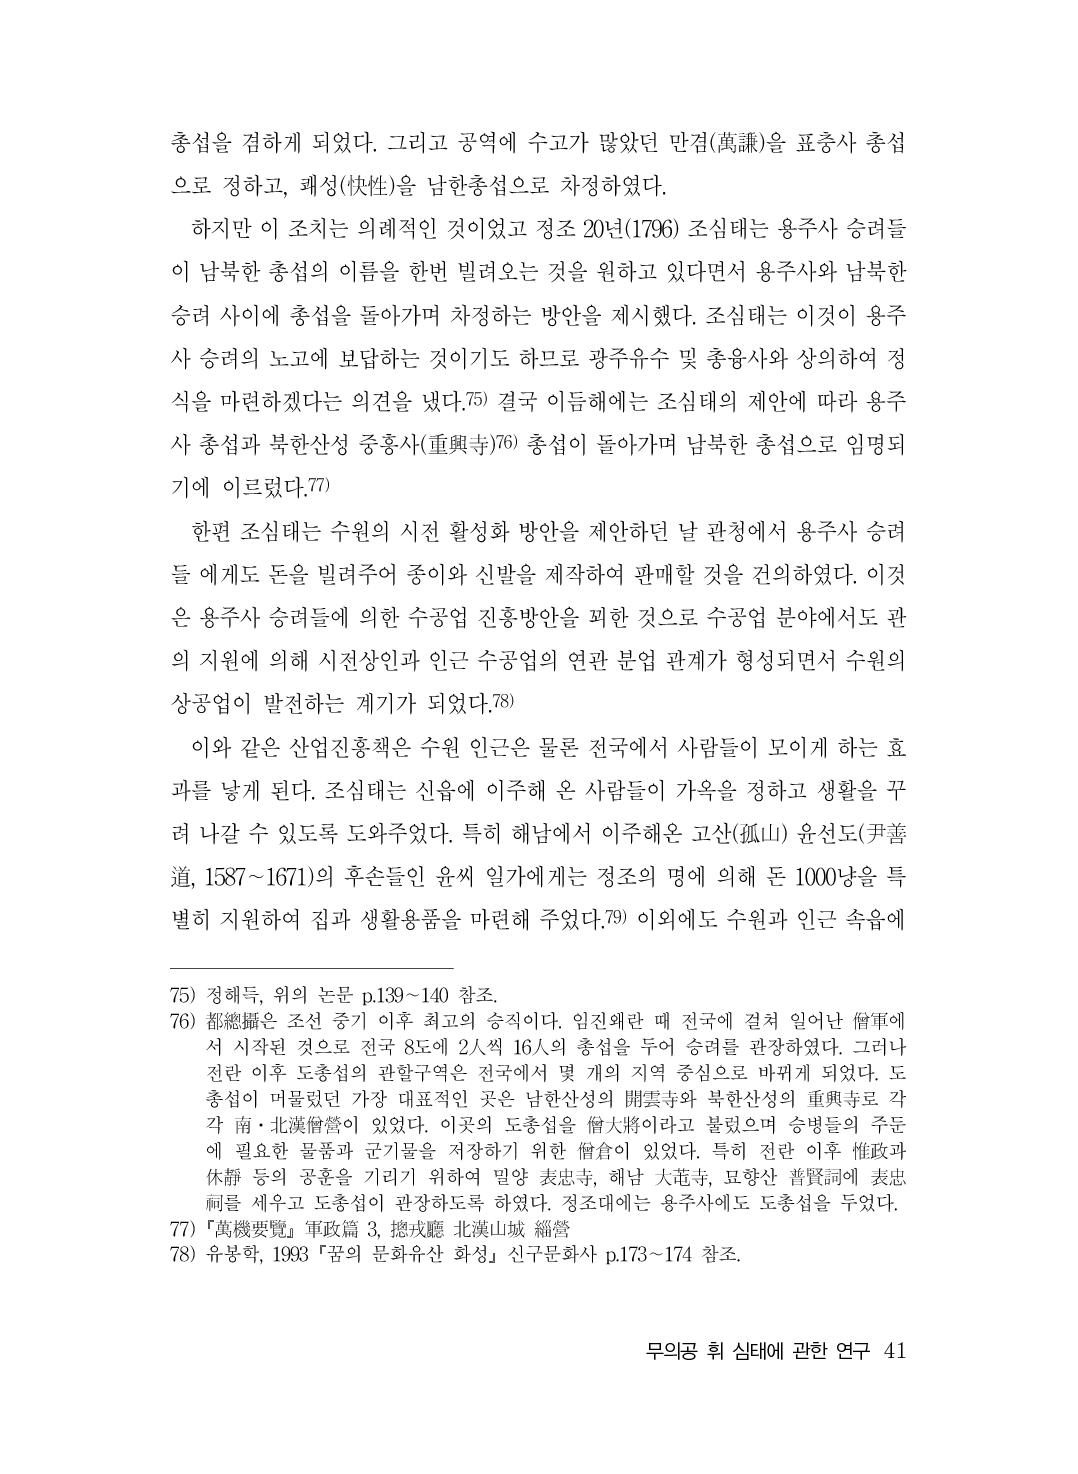 (전체) 송산종보(27호)(최종)_42.jpg